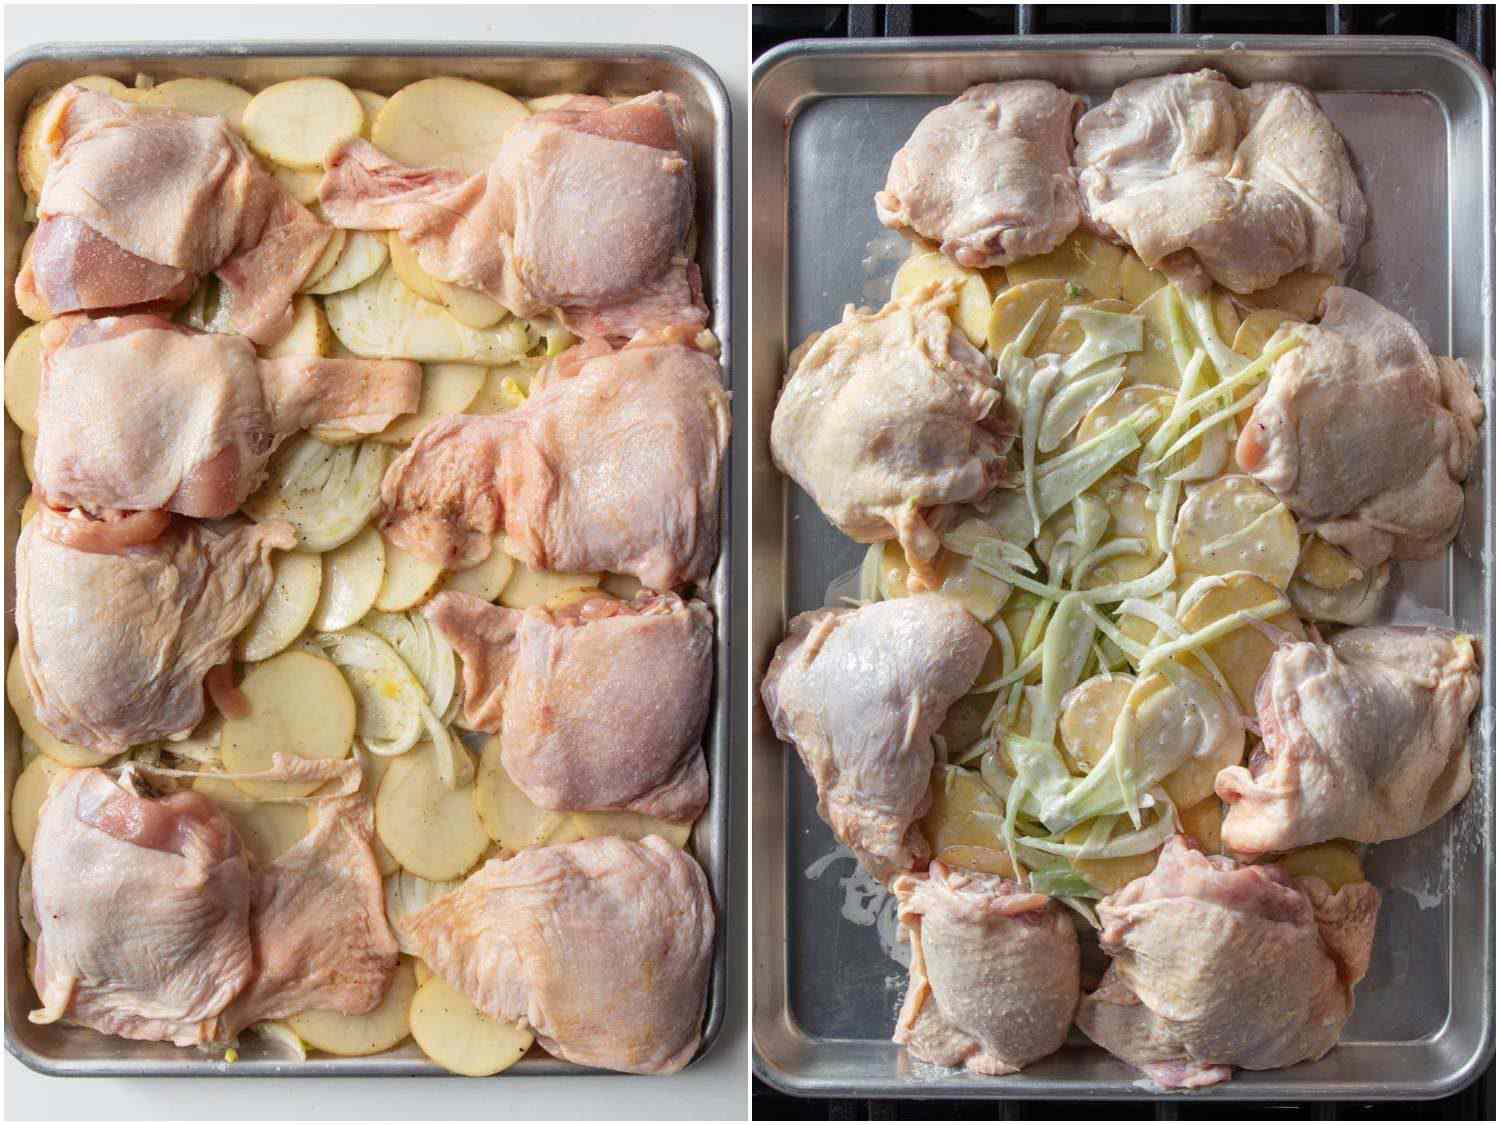 在托盘上放置鸡肉和蔬菜的两种方式的比较:左图，蔬菜均匀地铺在一层，鸡肉放在上面。在右边，鸡肉还是围绕着四周，但蔬菜堆在中间。